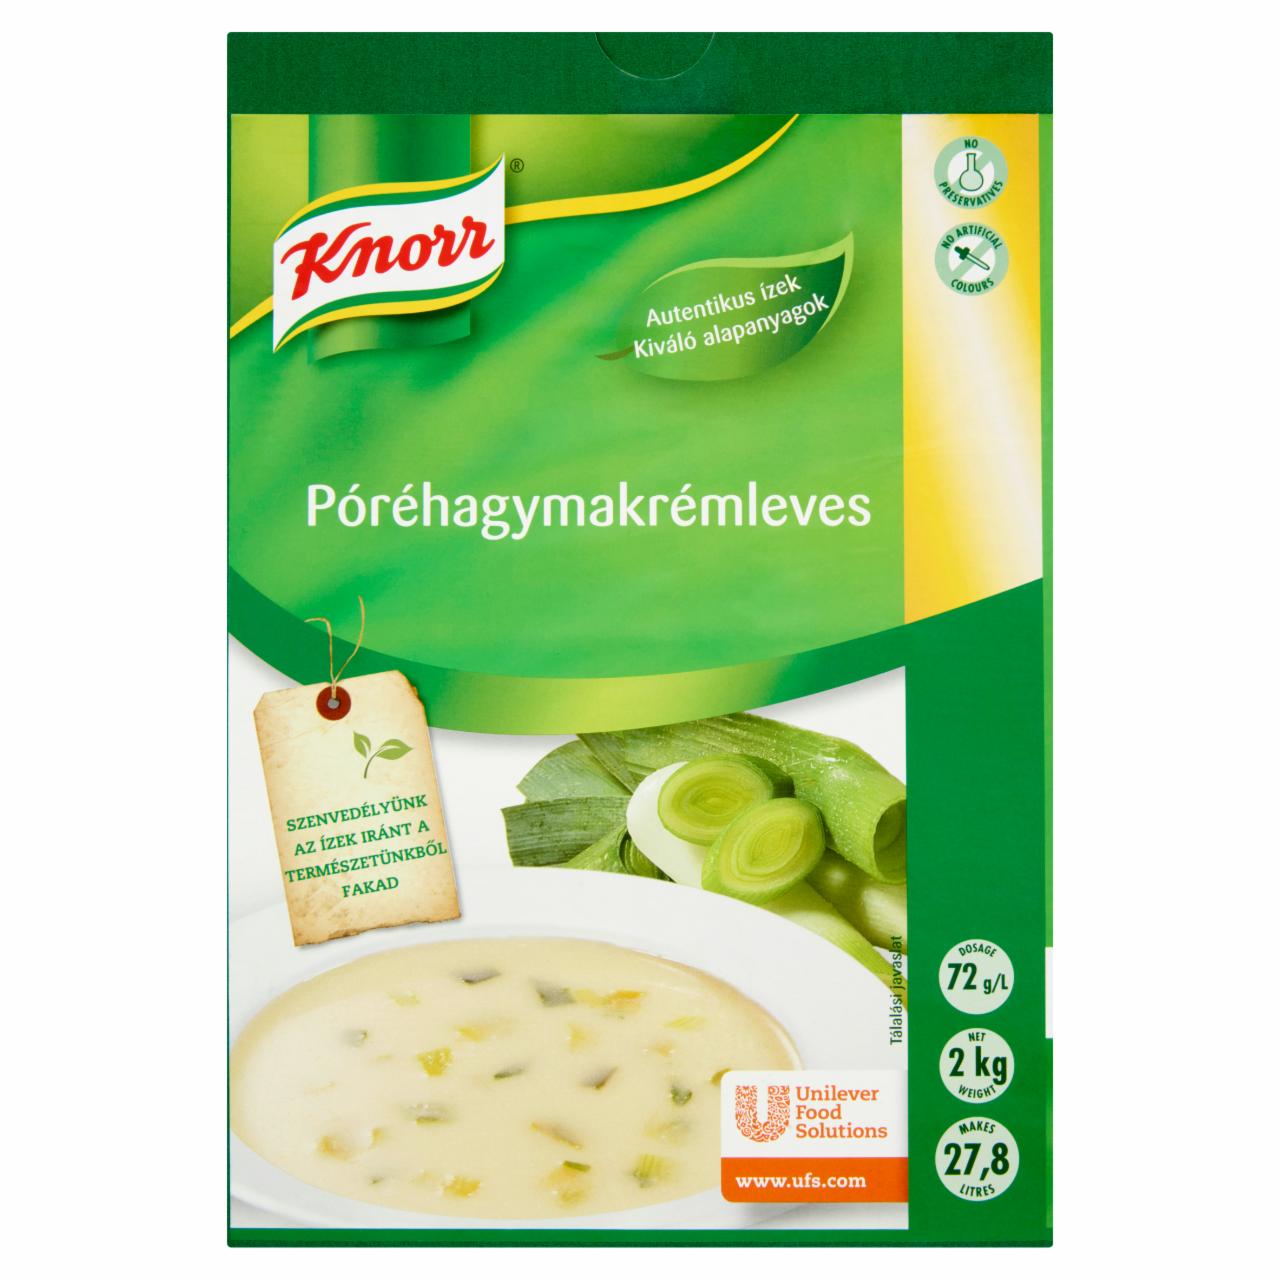 Képek - Knorr póréhagymakrémleves 2 kg